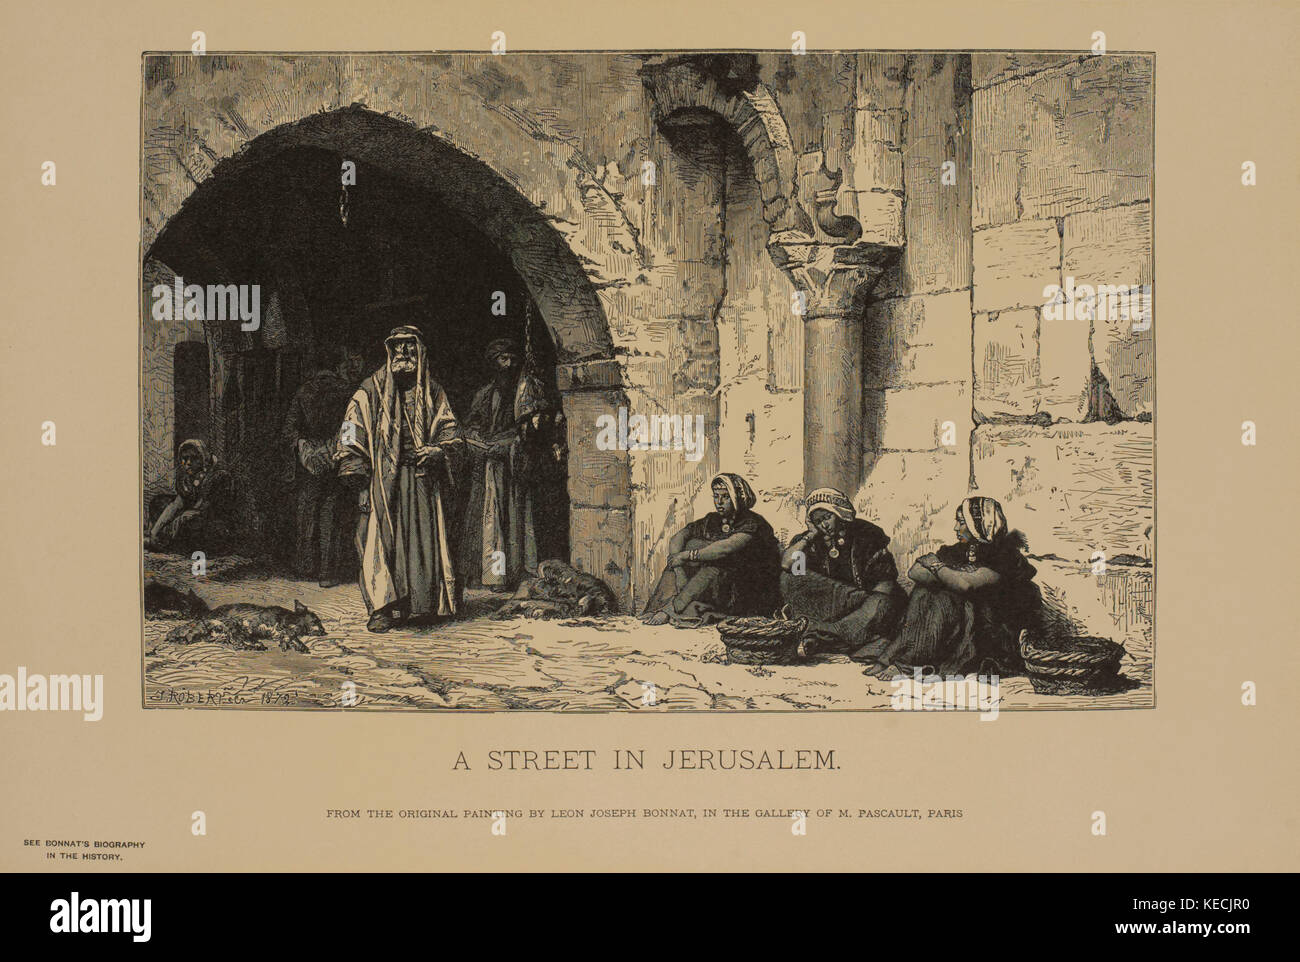 Una strada di Gerusalemme, fotoincisione stampa da dipinto originale di Leon Joseph bonnat, i capolavori di arte francese da louis viardot, pubblicato da rotocalco goupil et Cie, Paris, 1882, gebbie & Co., Philadelphia, 1883 Foto Stock